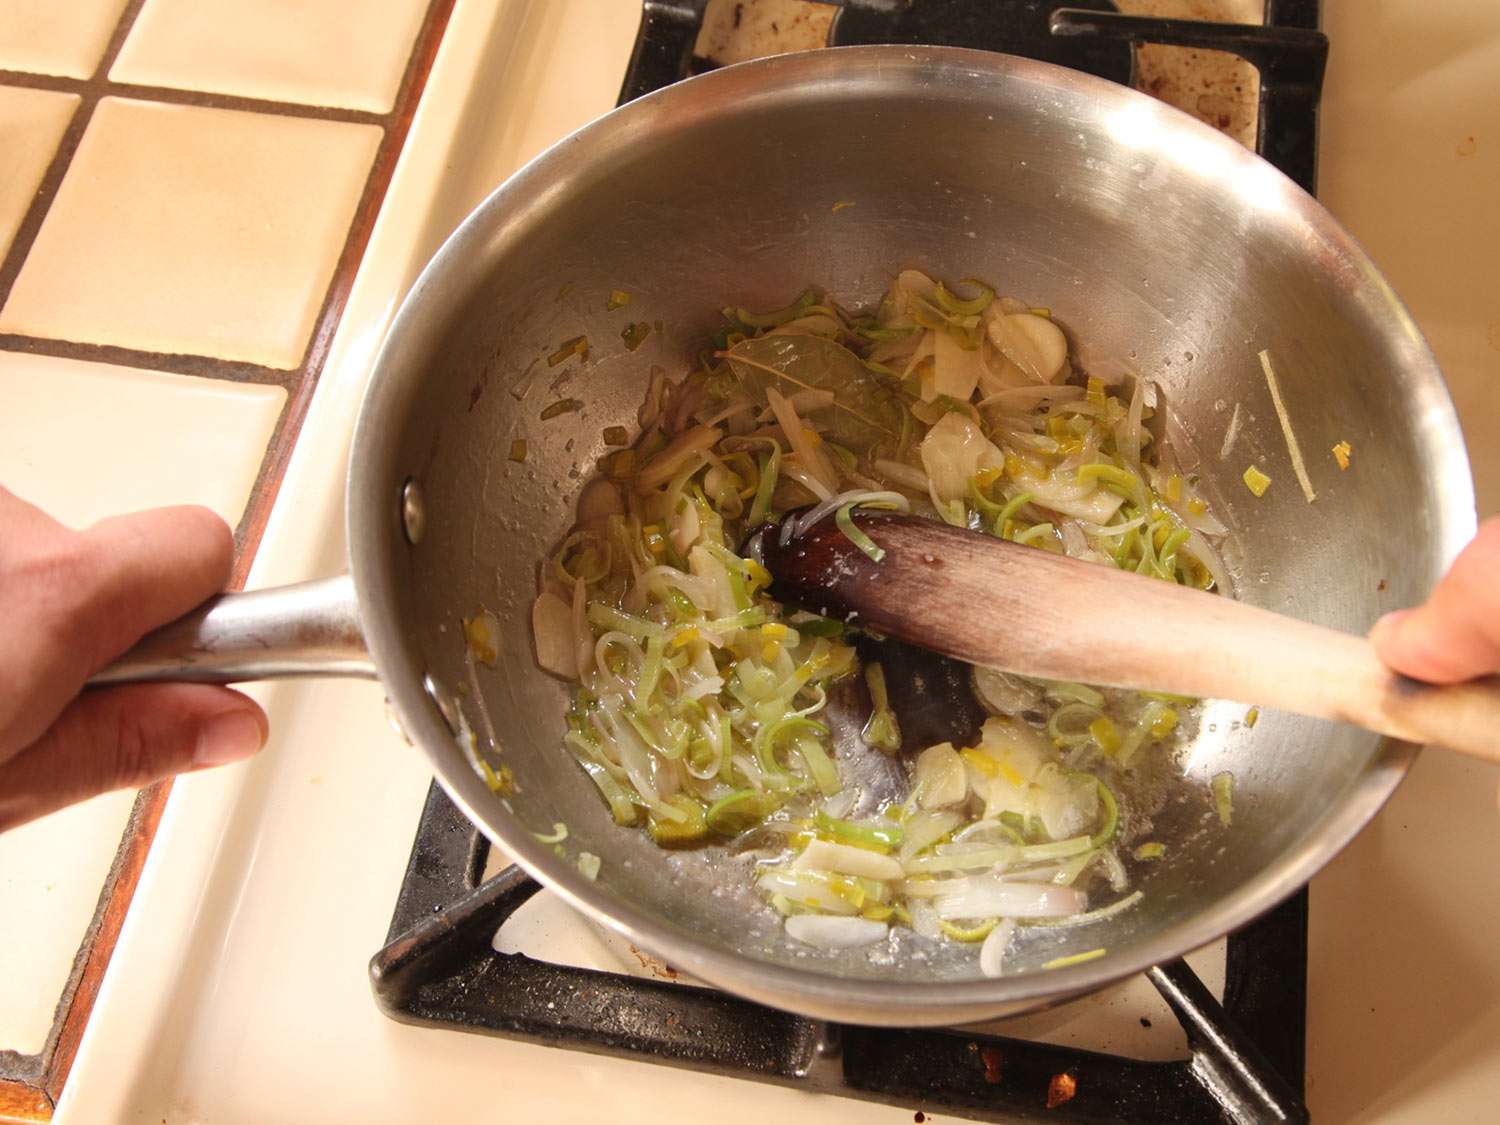 葱，韭菜和大蒜用黄油中火煮至软。切片的葱看起来软绵绵的，有点半透明。